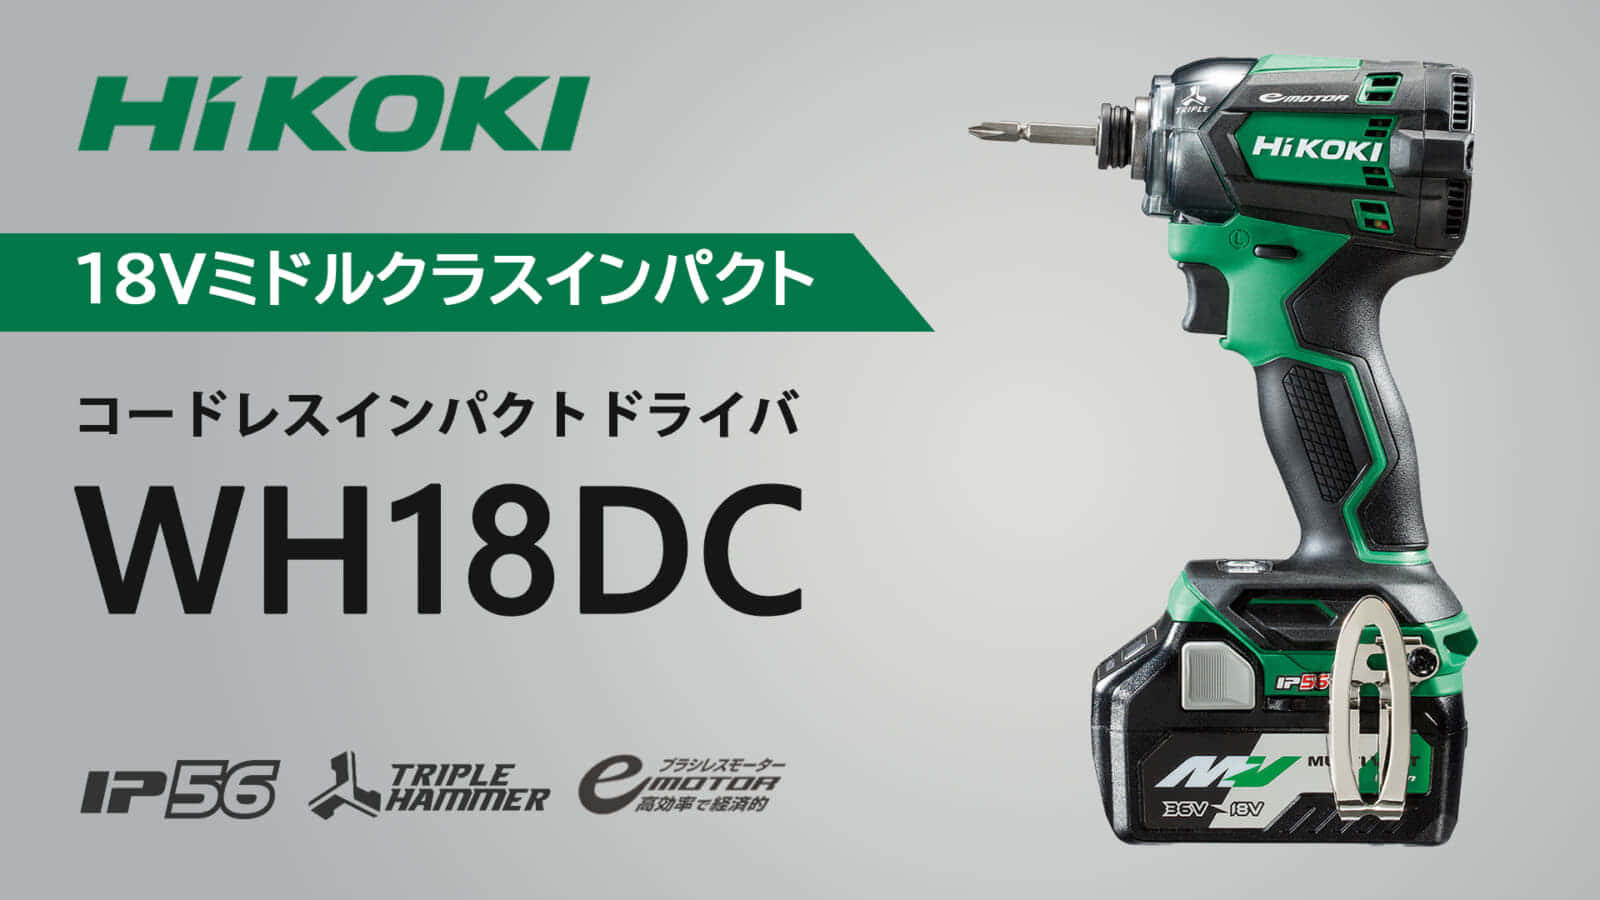 HiKOKI WH18DC コードレスインパクトドライバを発売、18Vクラスの